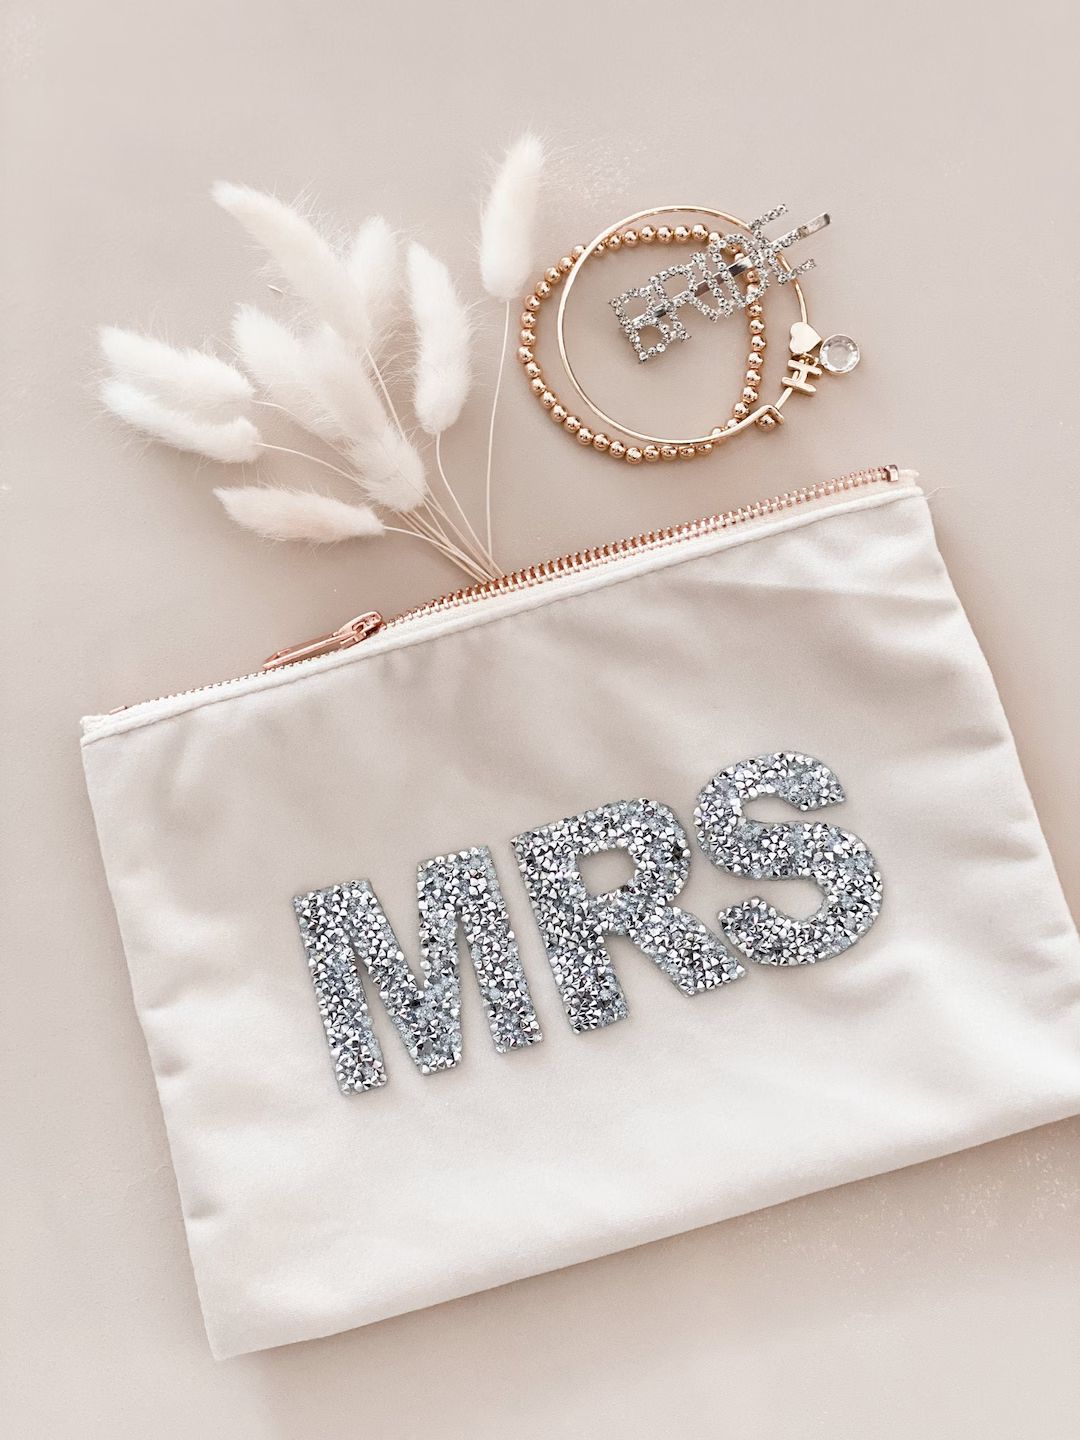 Mrs Make Up Bag Velvet Honeymoon Bride Gift Bag Cosmetic Bag Bride Gift Ideas Bridal Shower Gift ... | Etsy (US)